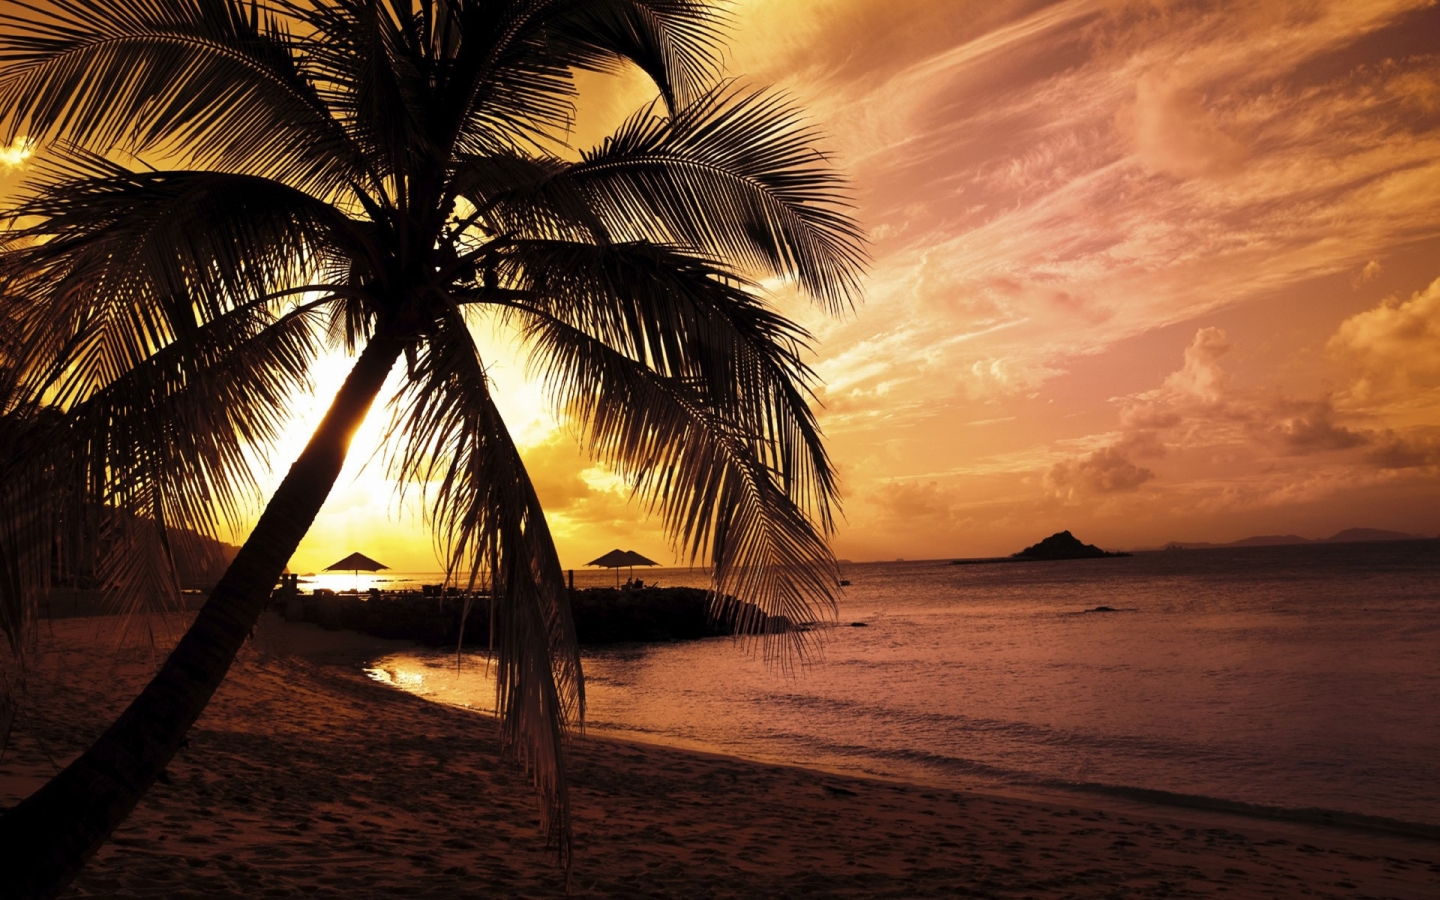 Beach Sunset for 1440 x 900 widescreen resolution